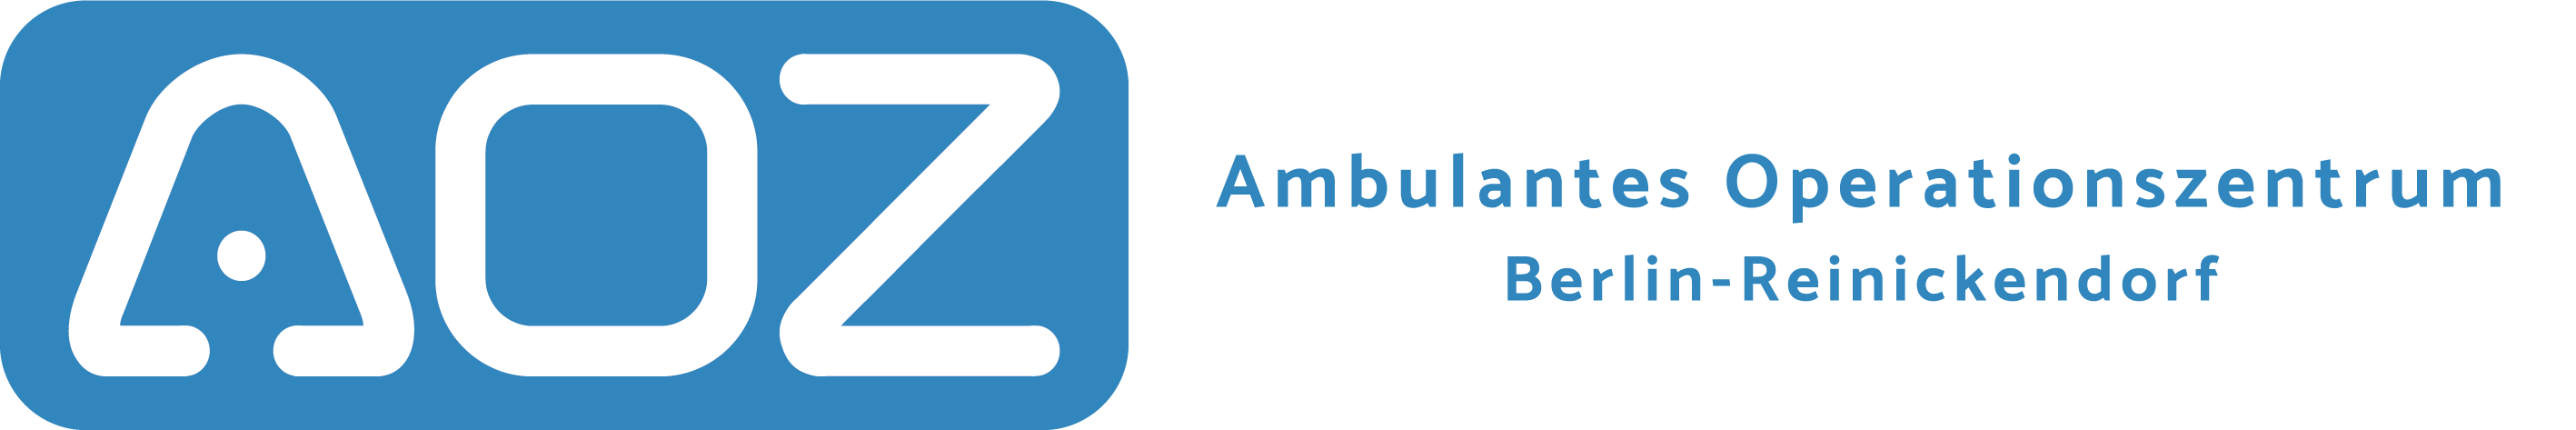 Logo des Ambulantes Operationszentrum Berlin-Reinickendorf